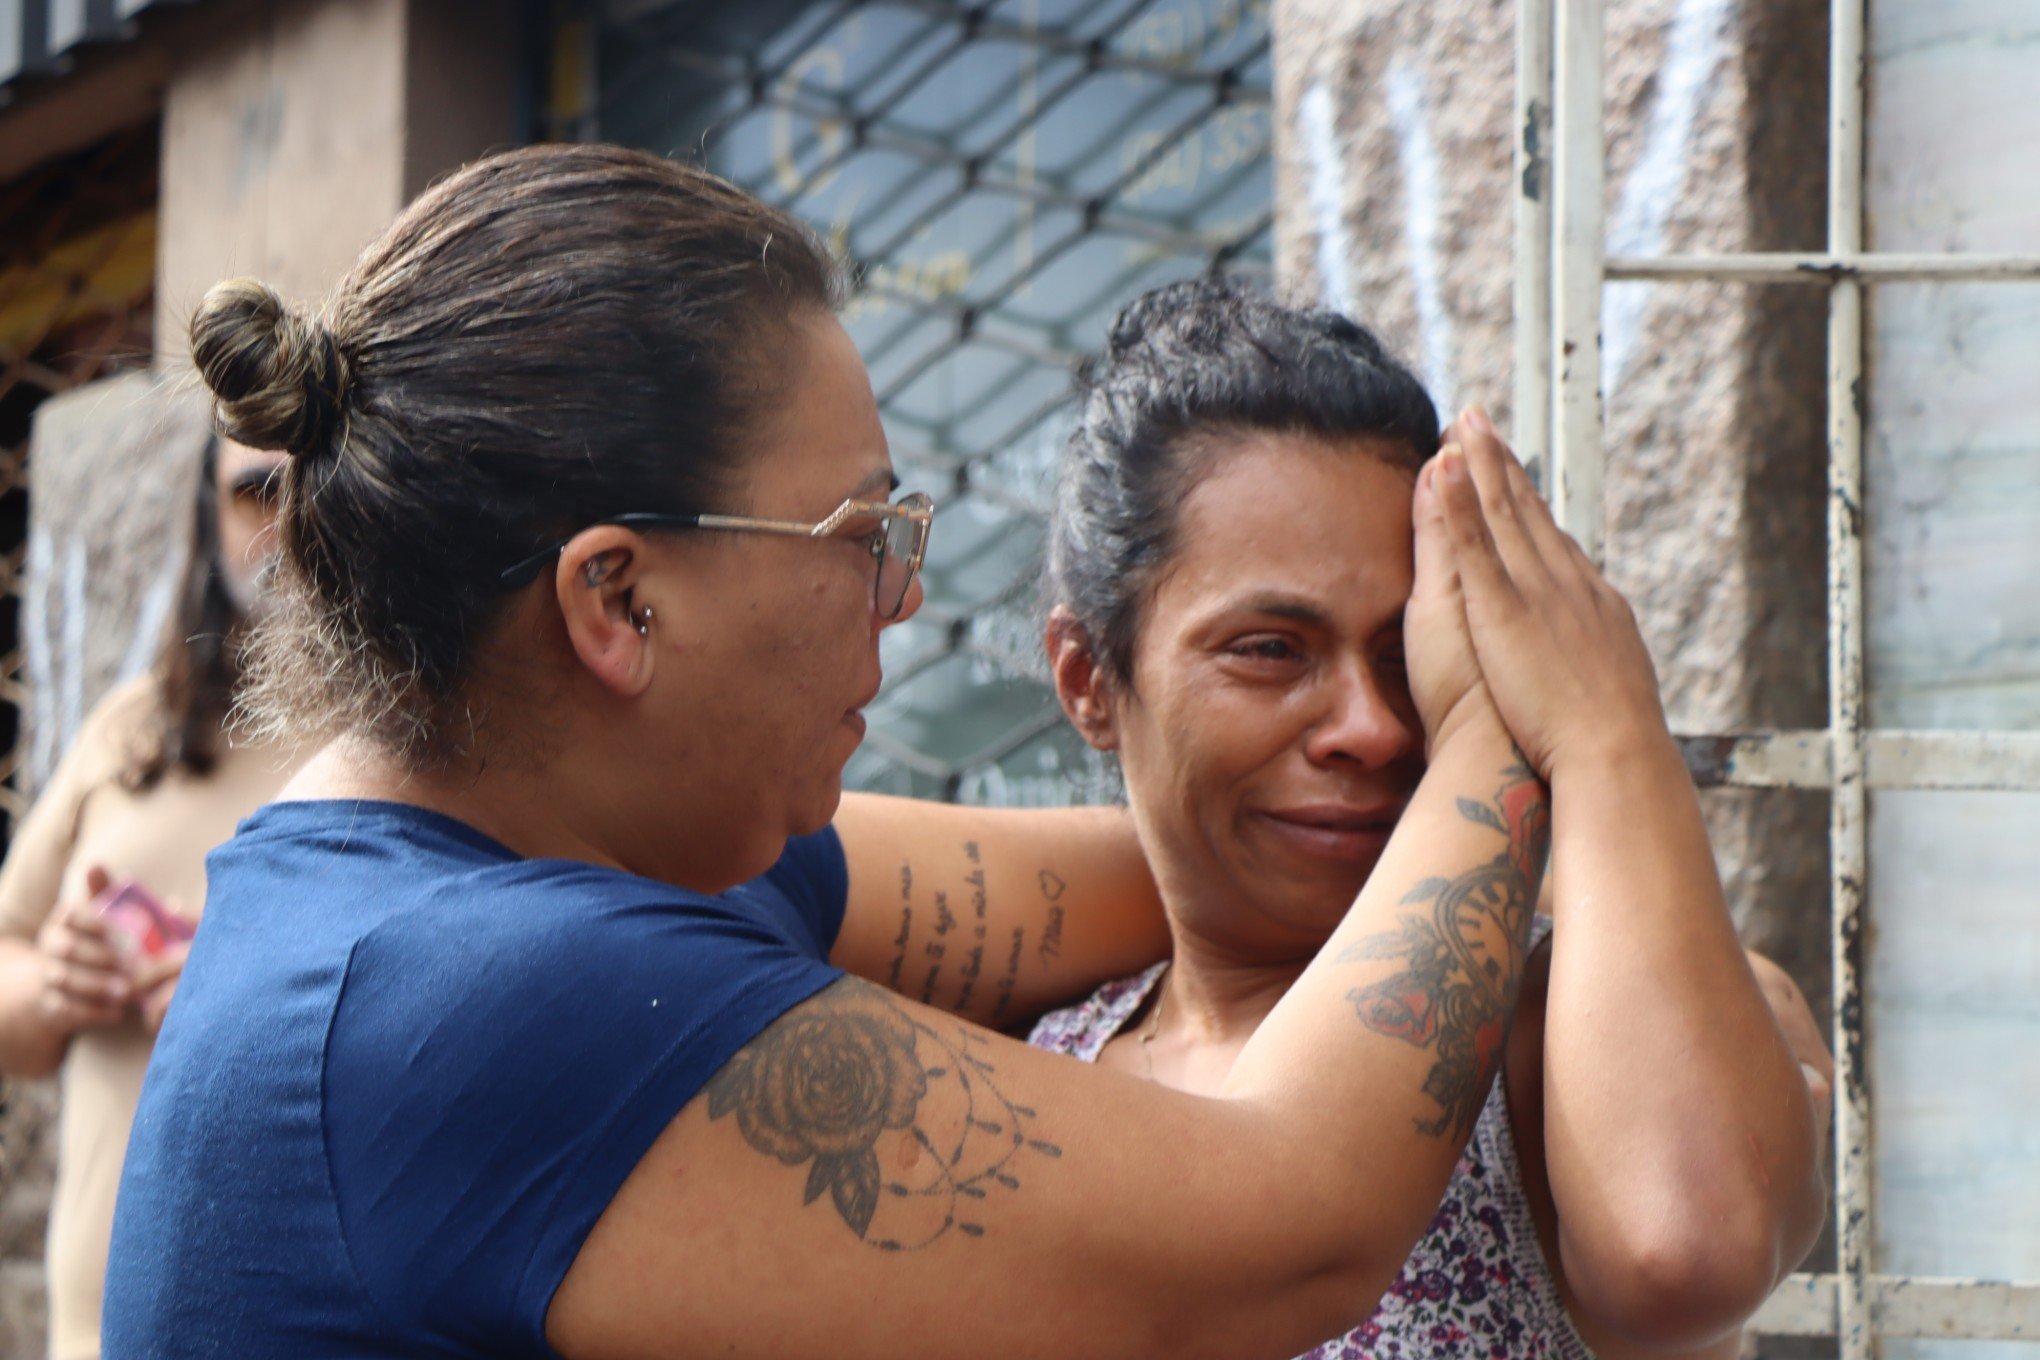 INCÊNDIO: "Noite aterrorizante", relatam moradores que escaparam com vida da pousada que pegou fogo em Porto Alegre